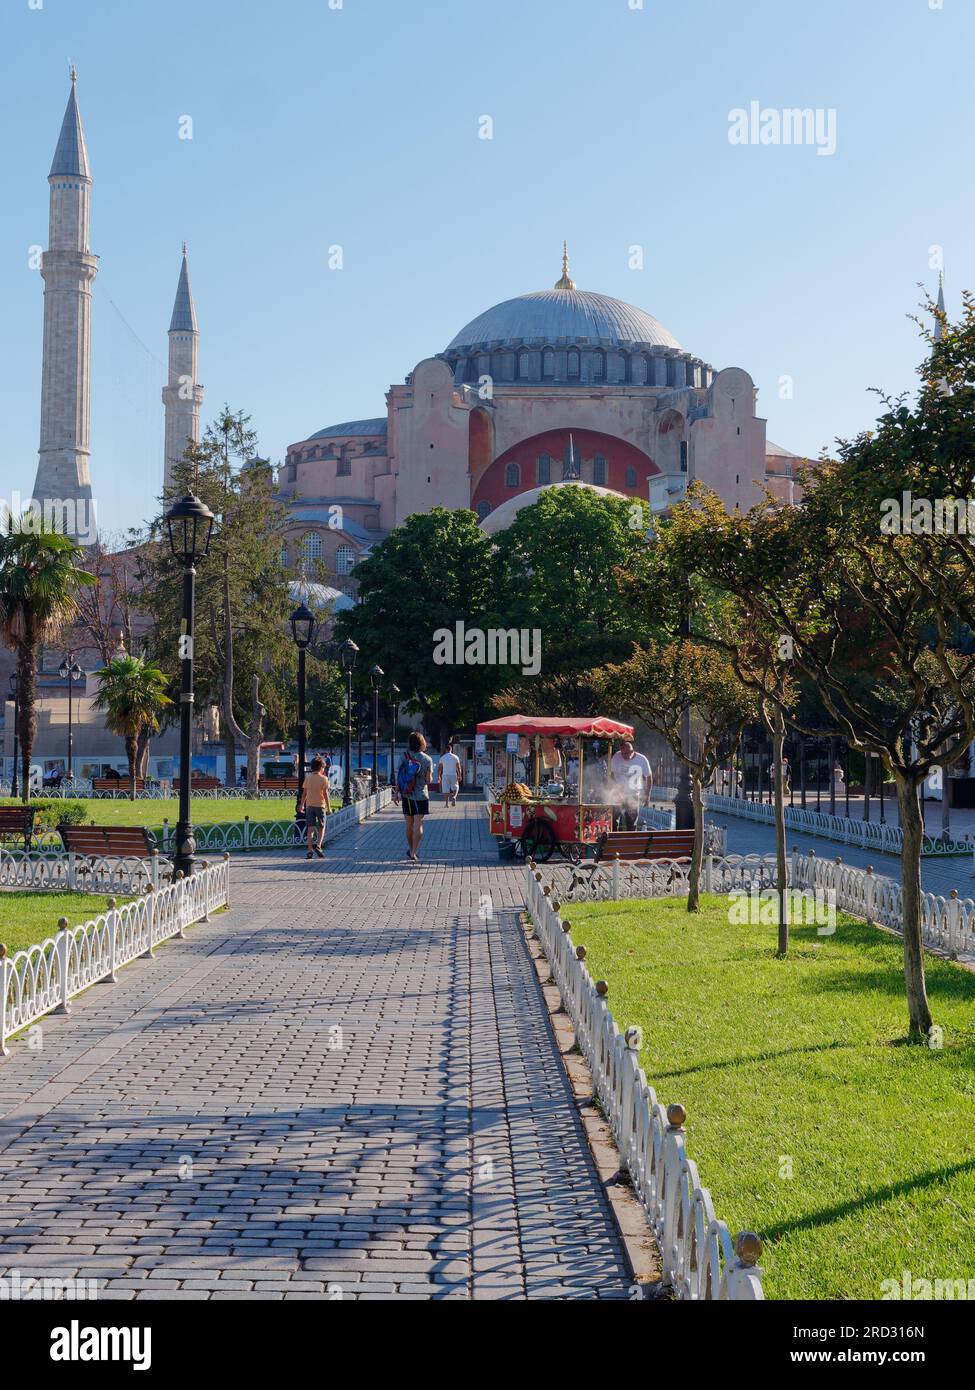 Gärten des Sultanahmet Parks mit der Hagia Sophia Moschee. Der rote Verkaufswagen verkauft gerösteten Mais. Istanbul, Türkei Stockfoto